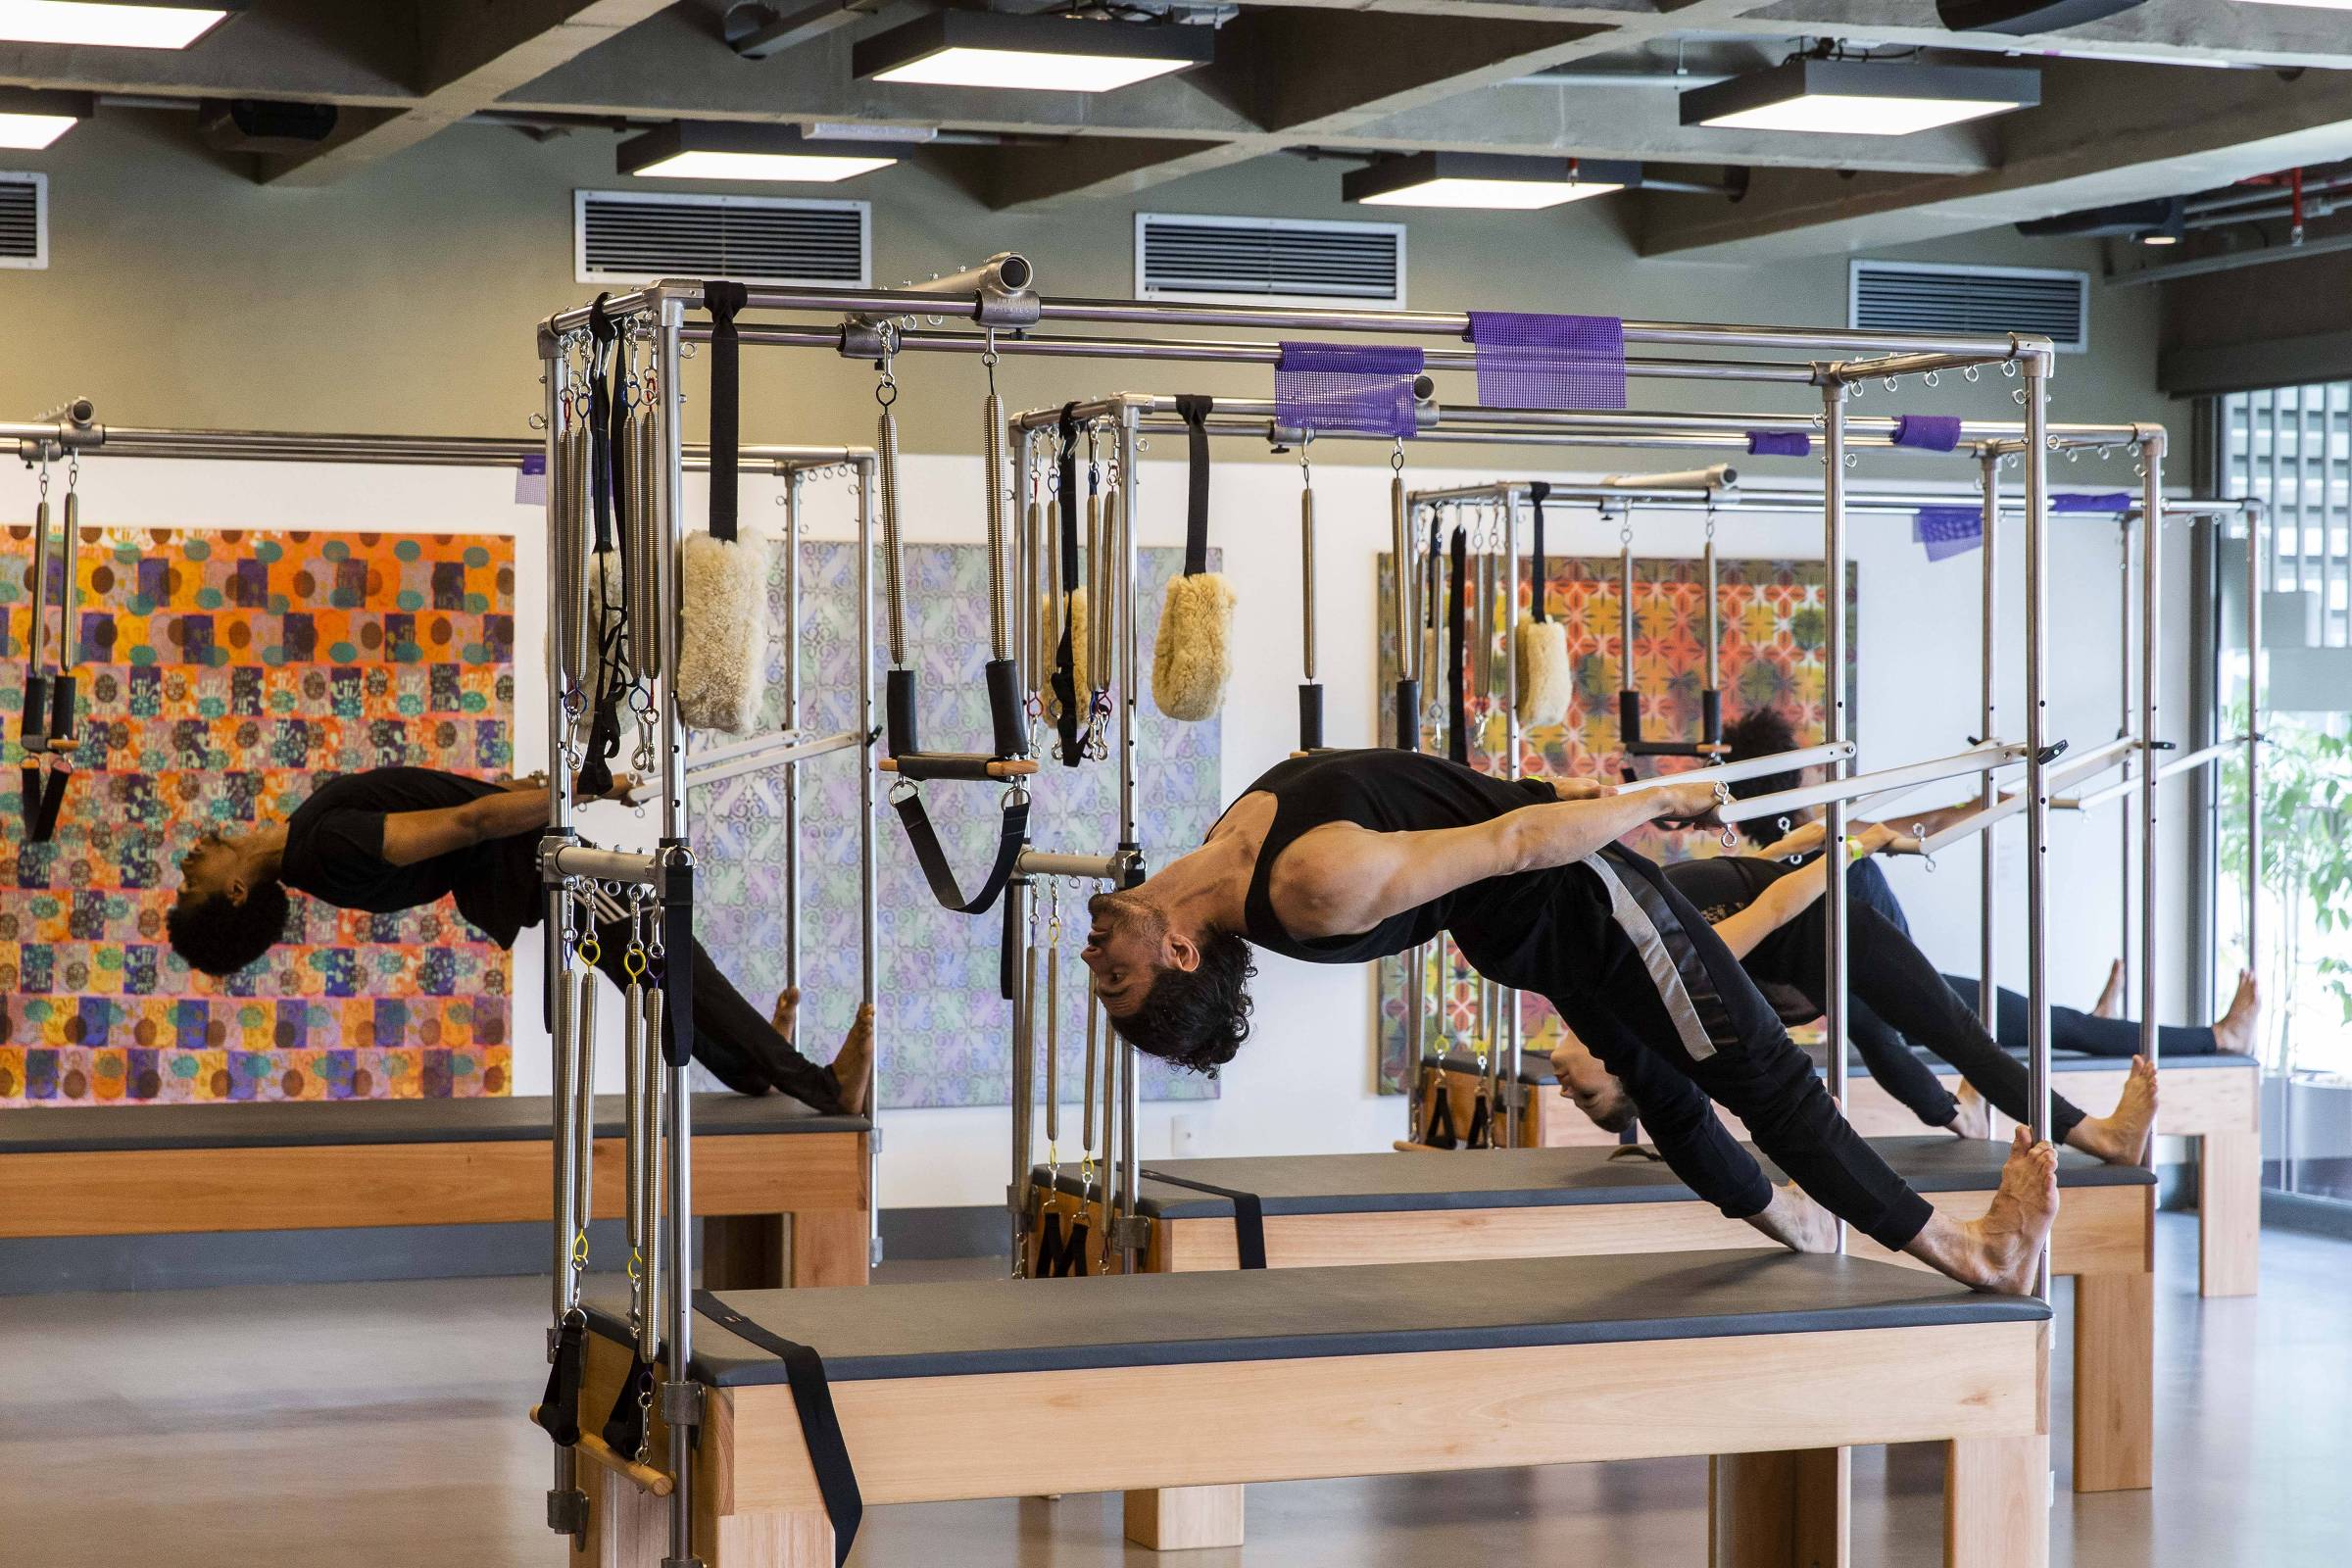 Os exercícios são feitos com aparelhos no novo estúdio de pilates